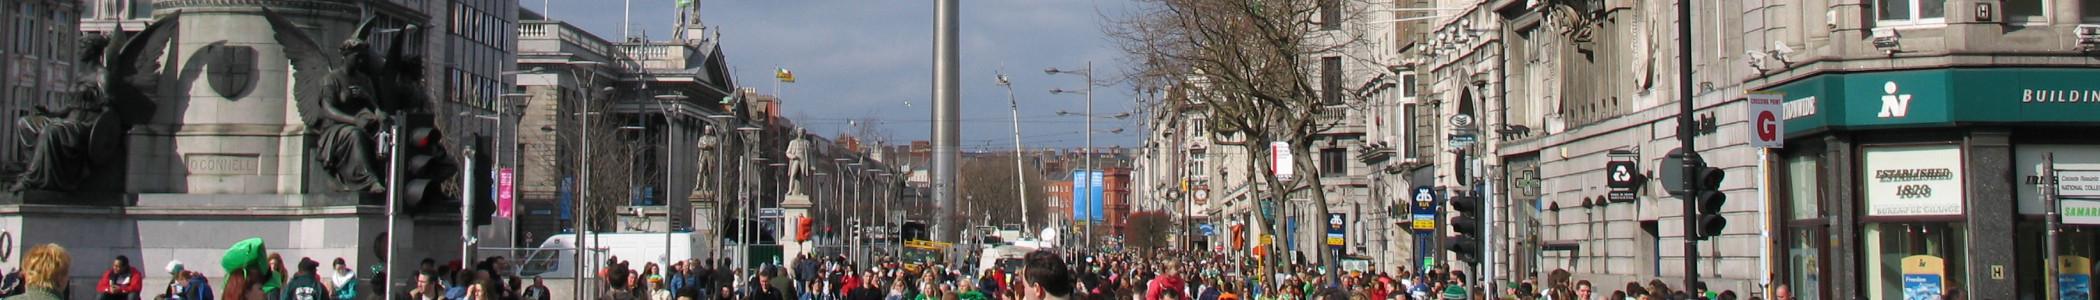 Banner image for Dublin on GigsGuide